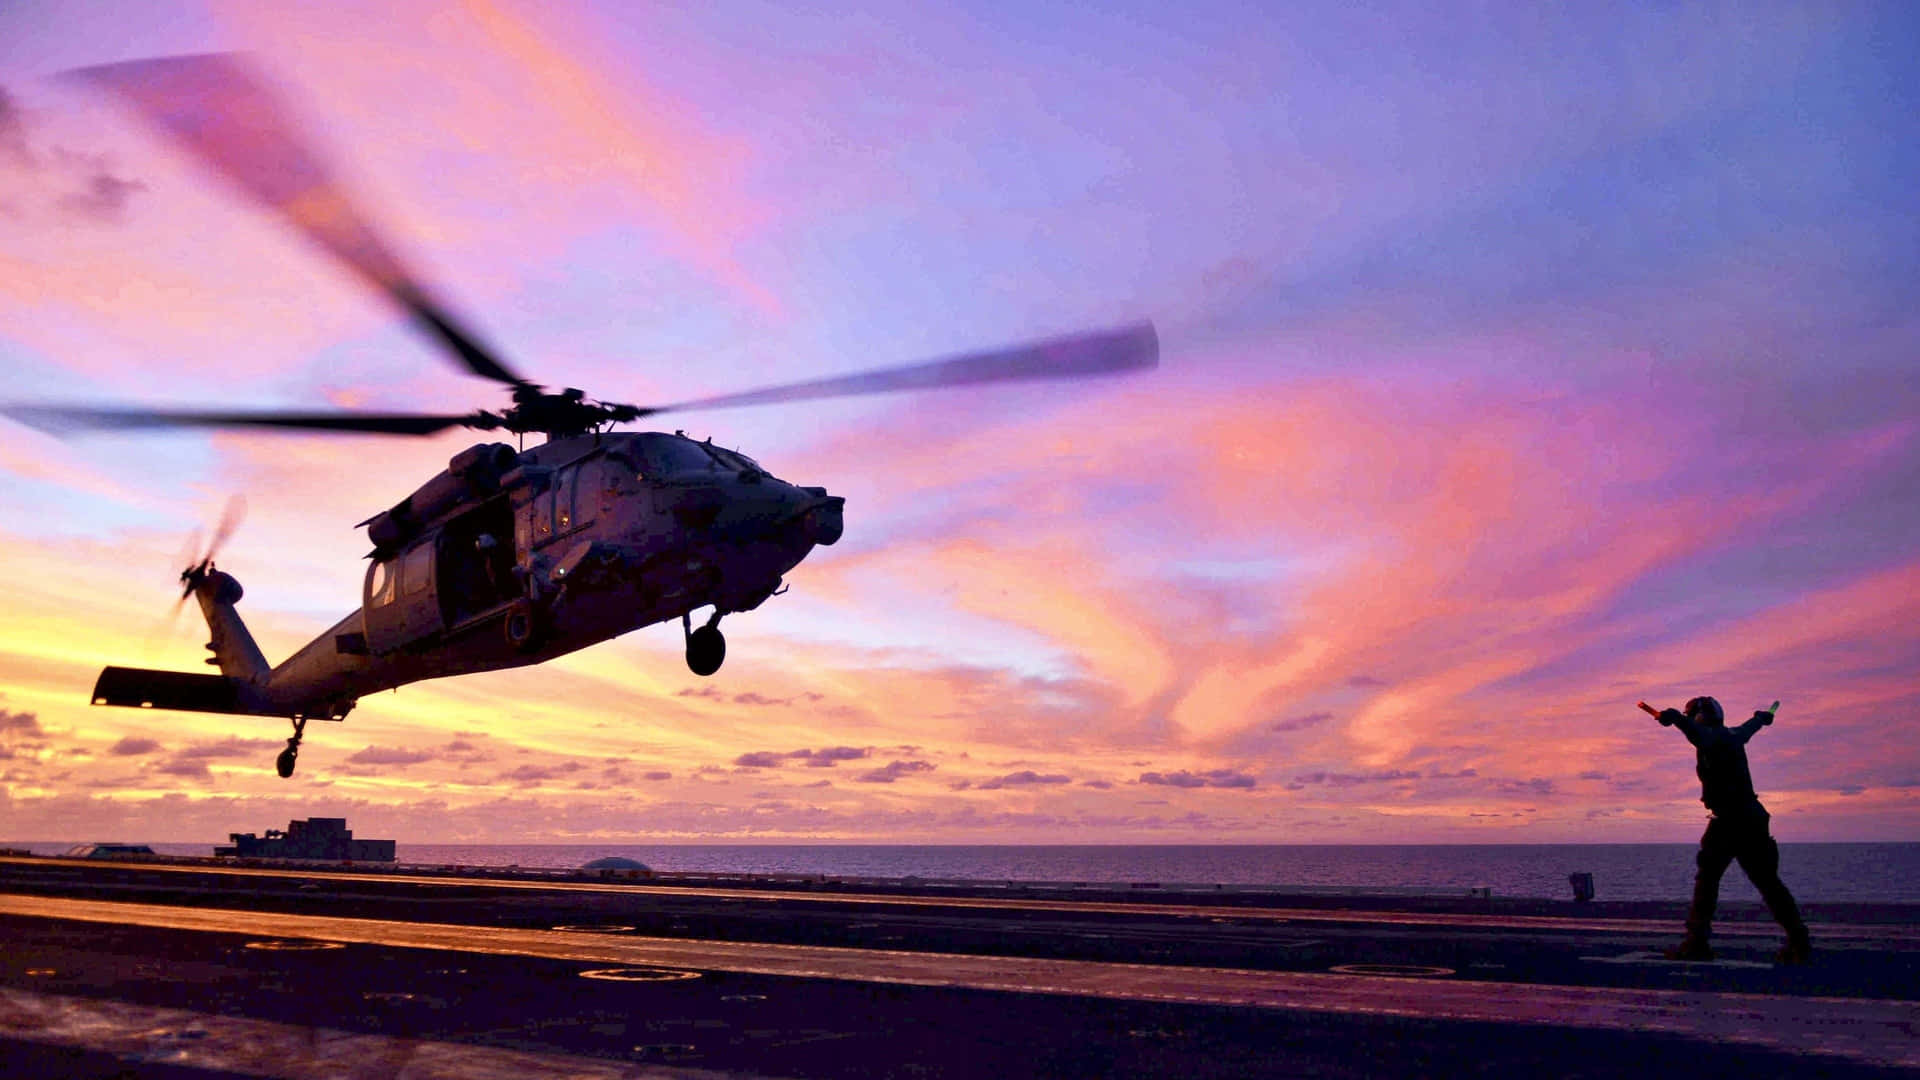 Seahawk Cool Helikoptermodel Wallpaper